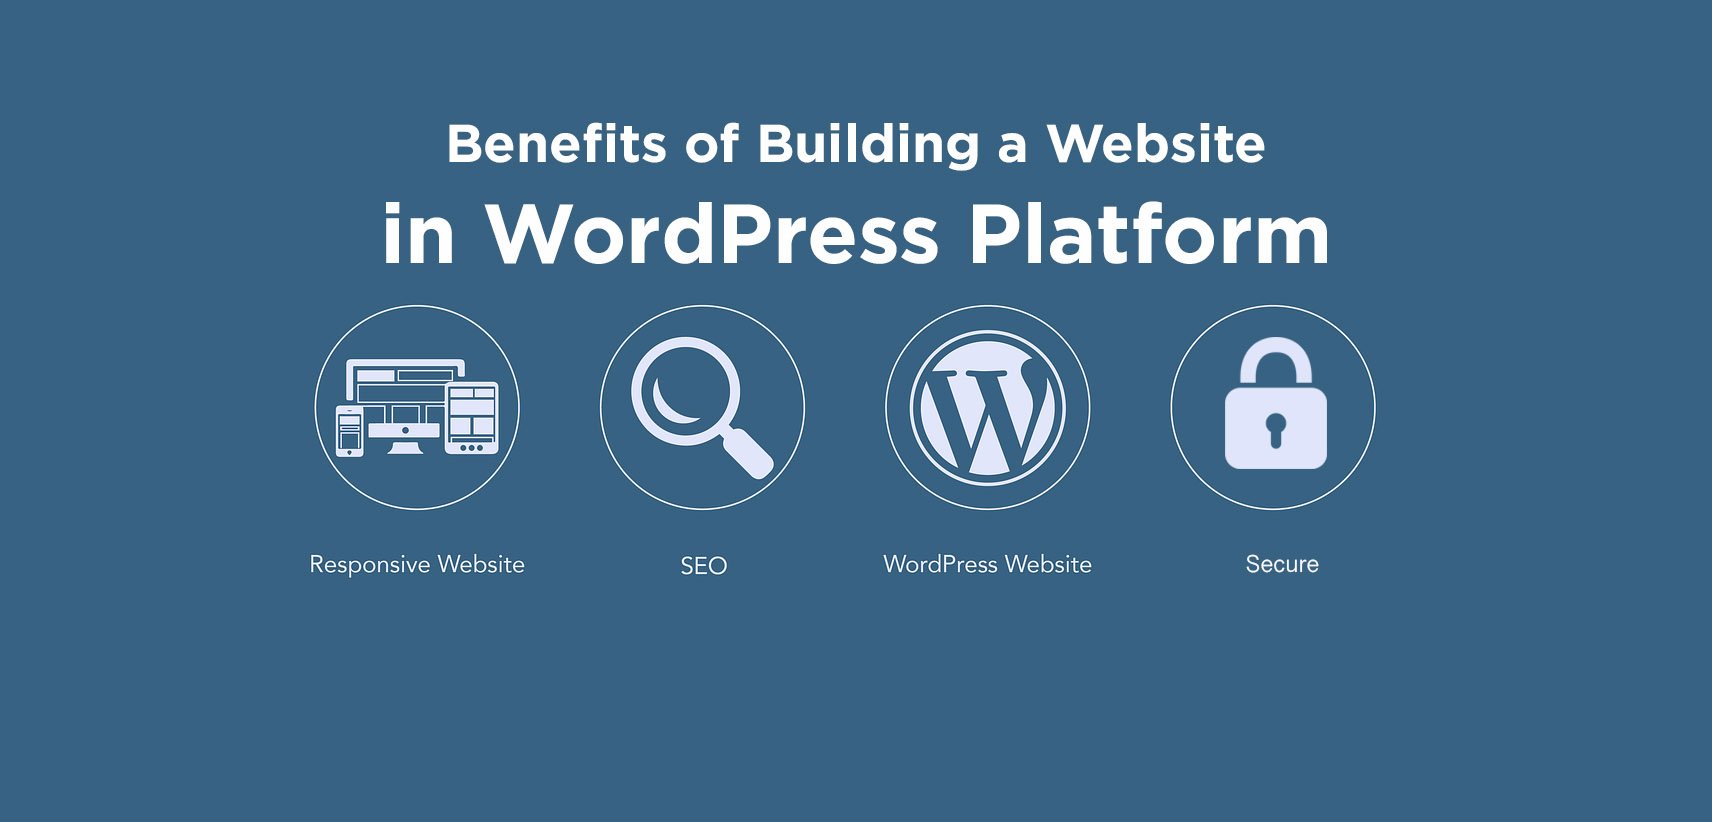 Benefits of using WordPress